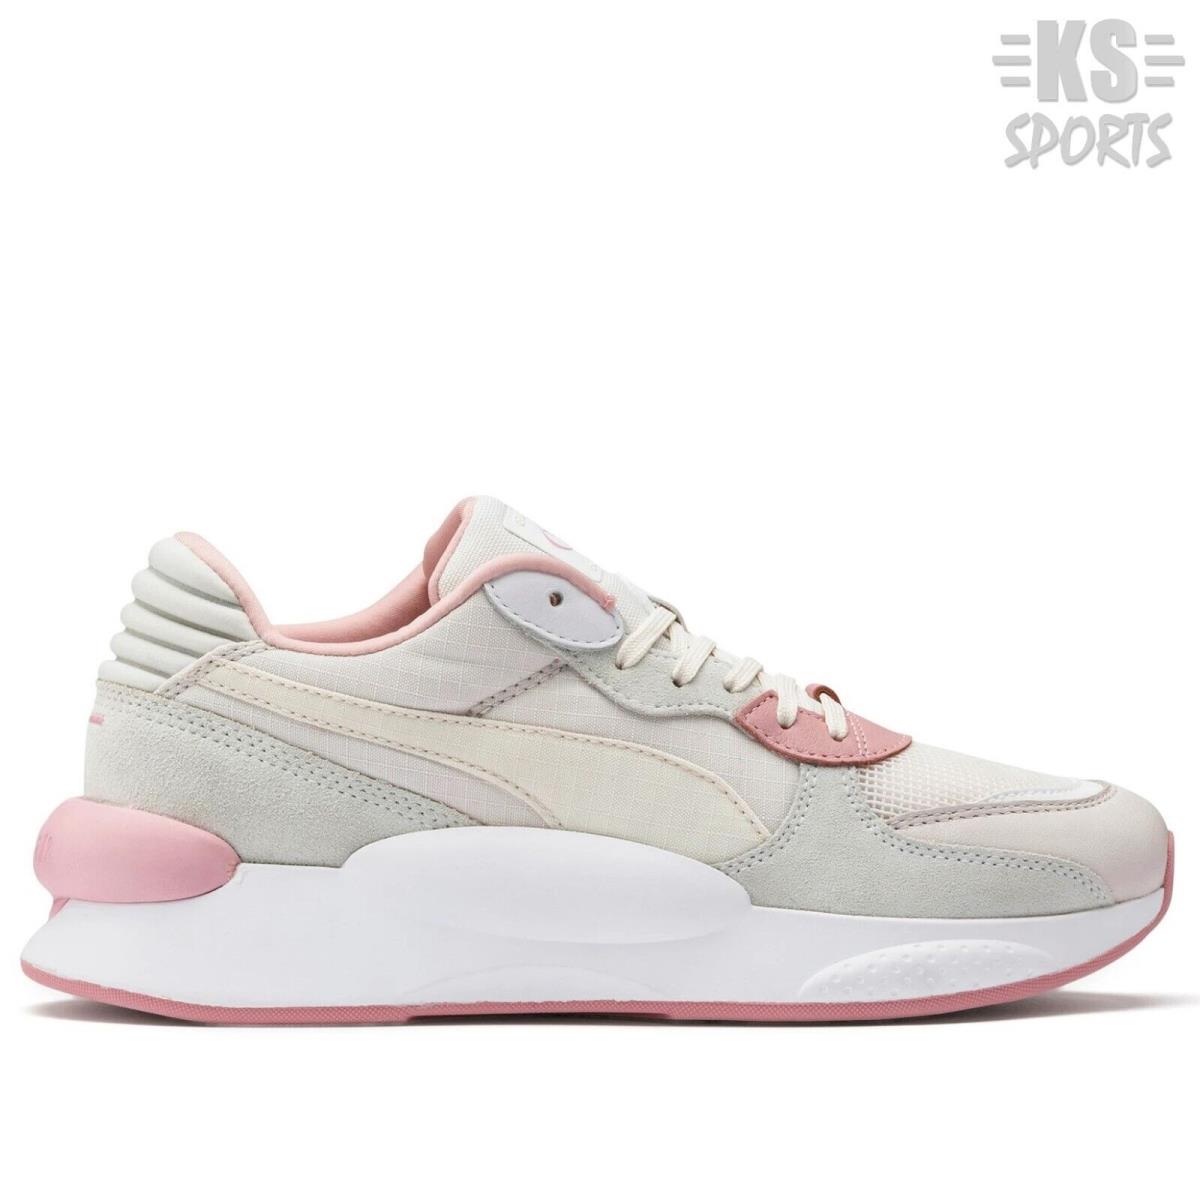 Puma RS 9.8 Space `pastel Parchment` Women`s Athletic Shoes 372199-05